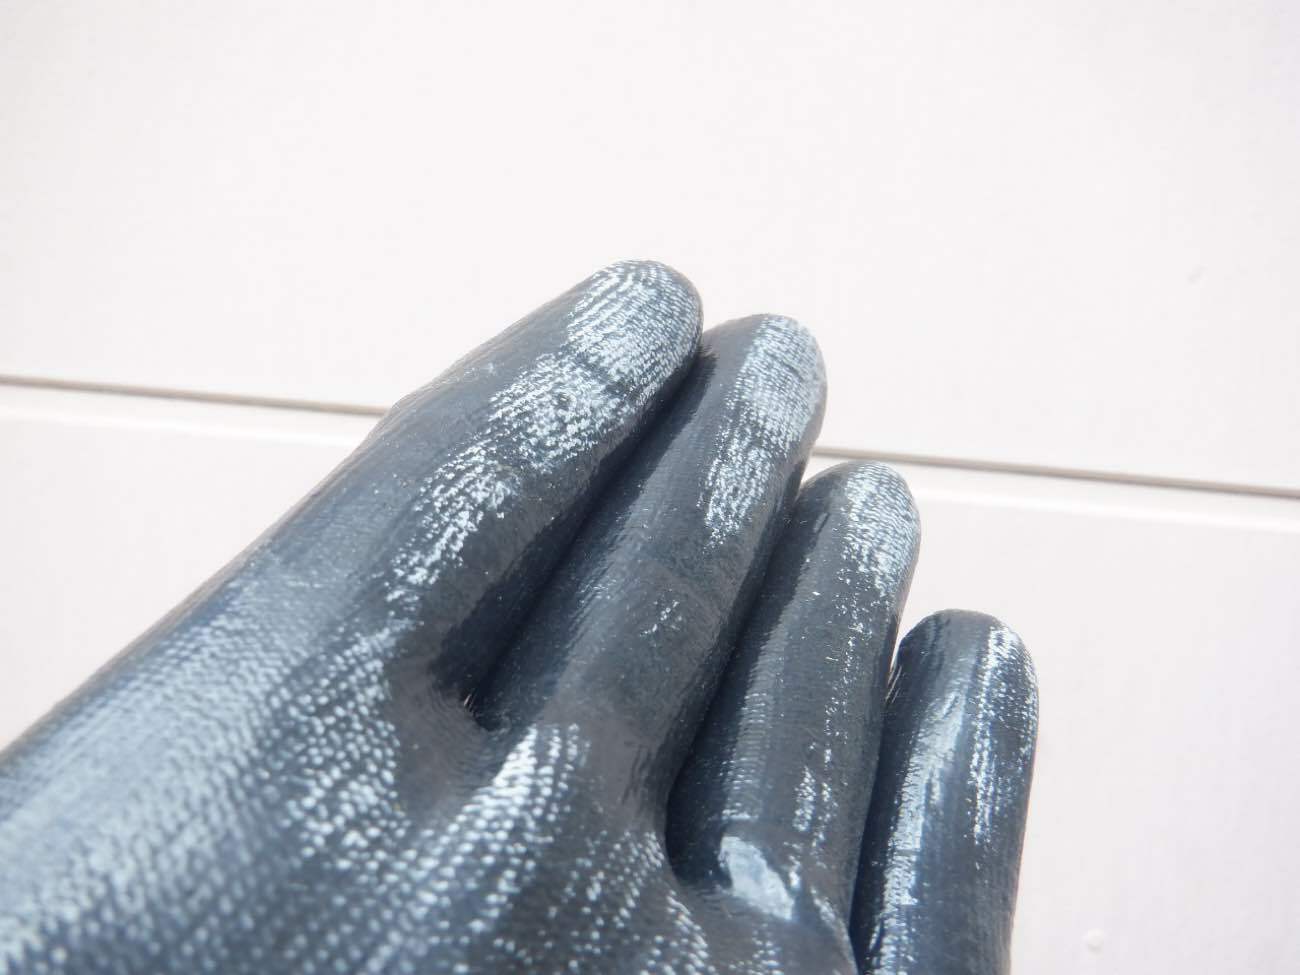 外壁を撫でると手に粉が付着する「チョーキング現象」